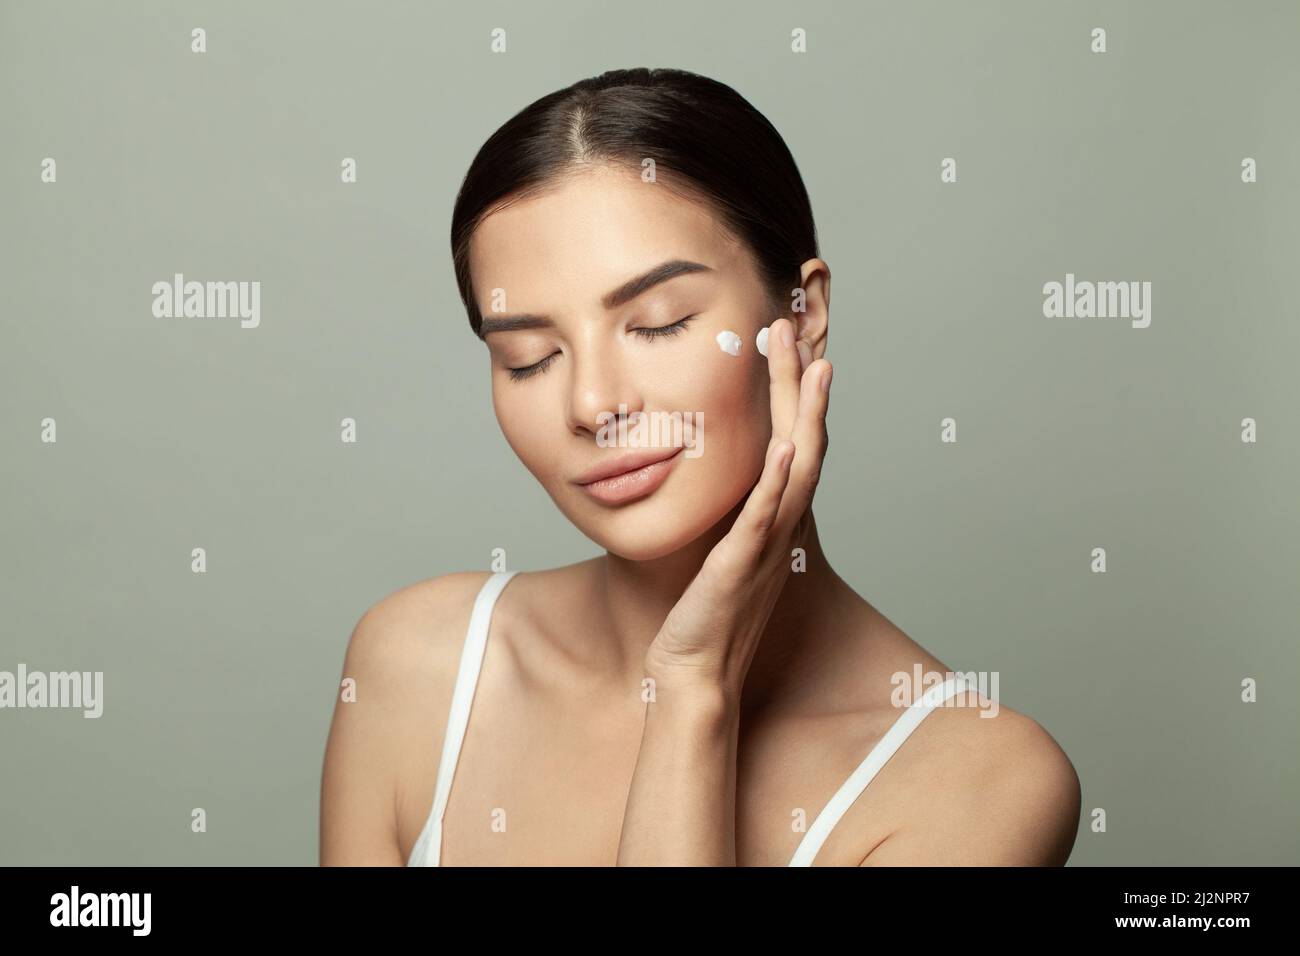 Femme en bonne santé appliquant de la crème hydratante sur son visage. Concept de traitement du visage et de soins de santé Banque D'Images